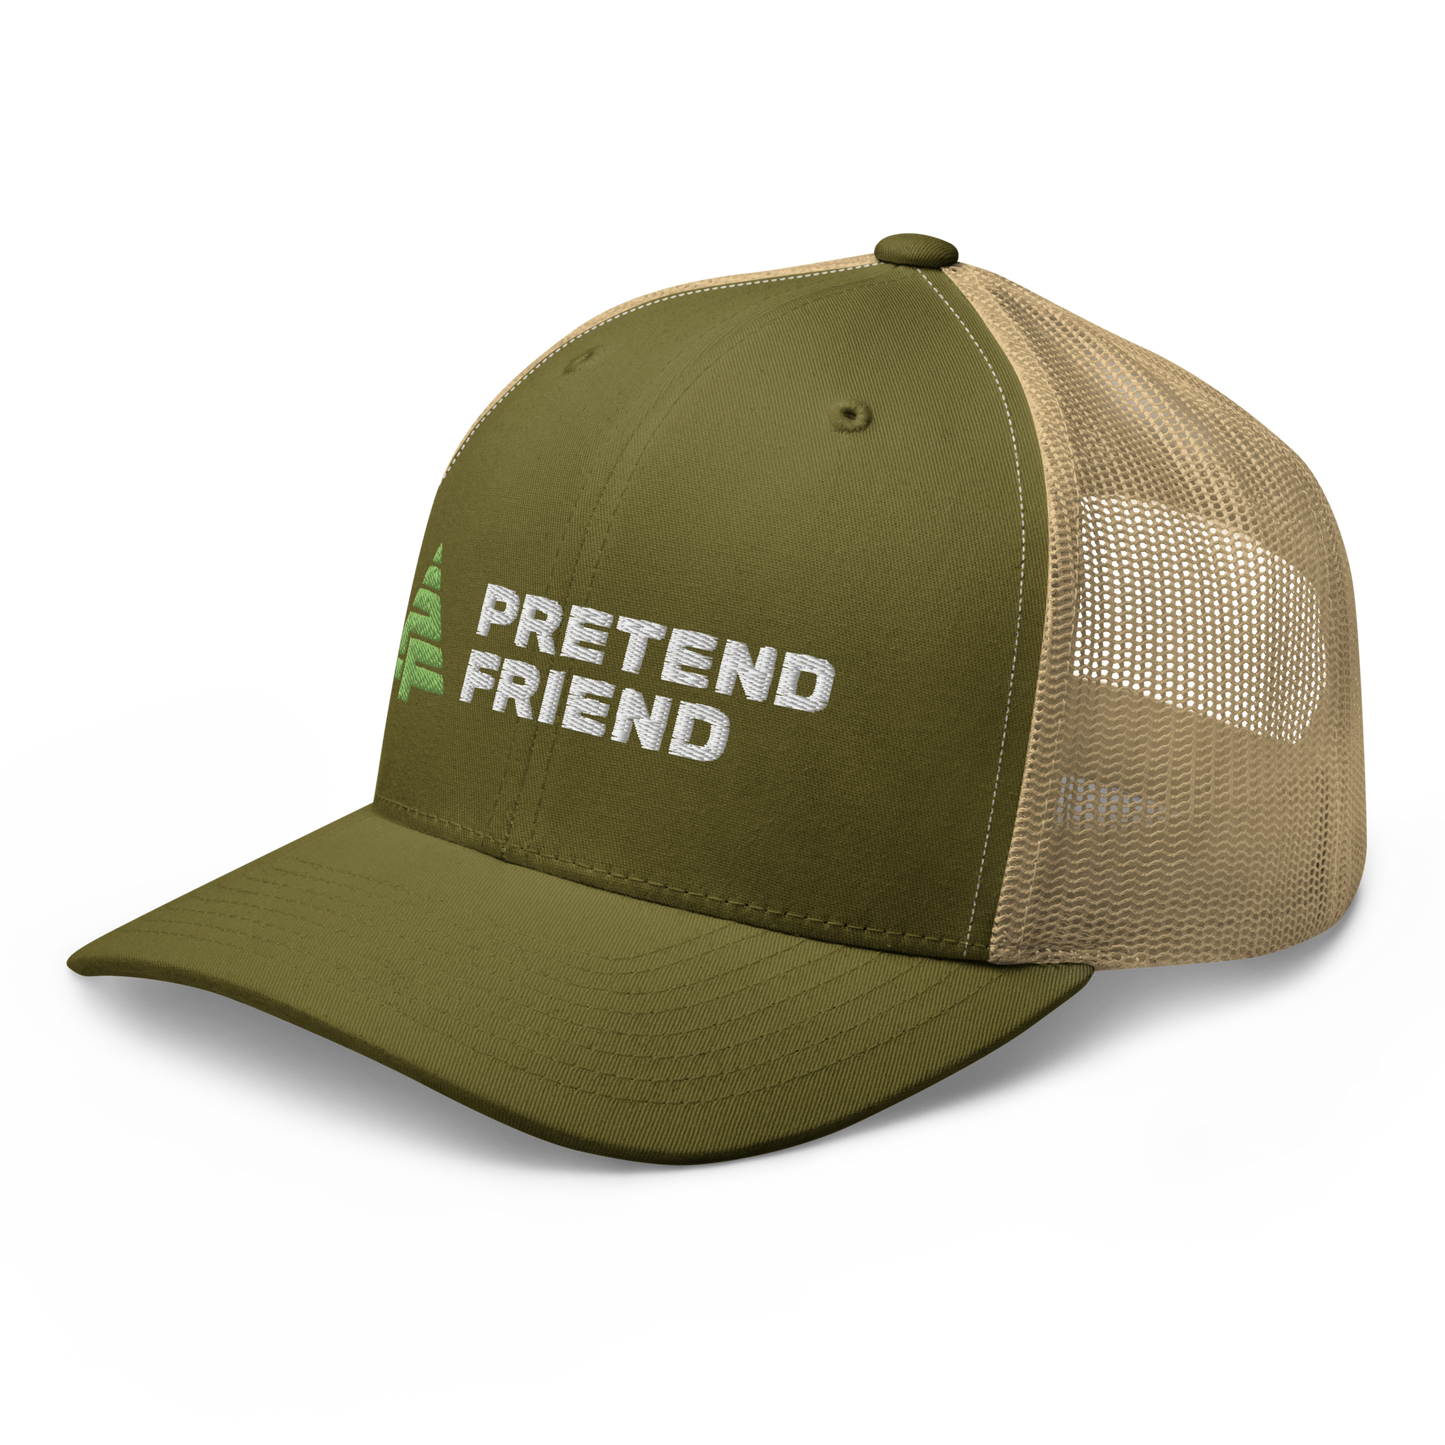 Pretend Friend Trucker Cap